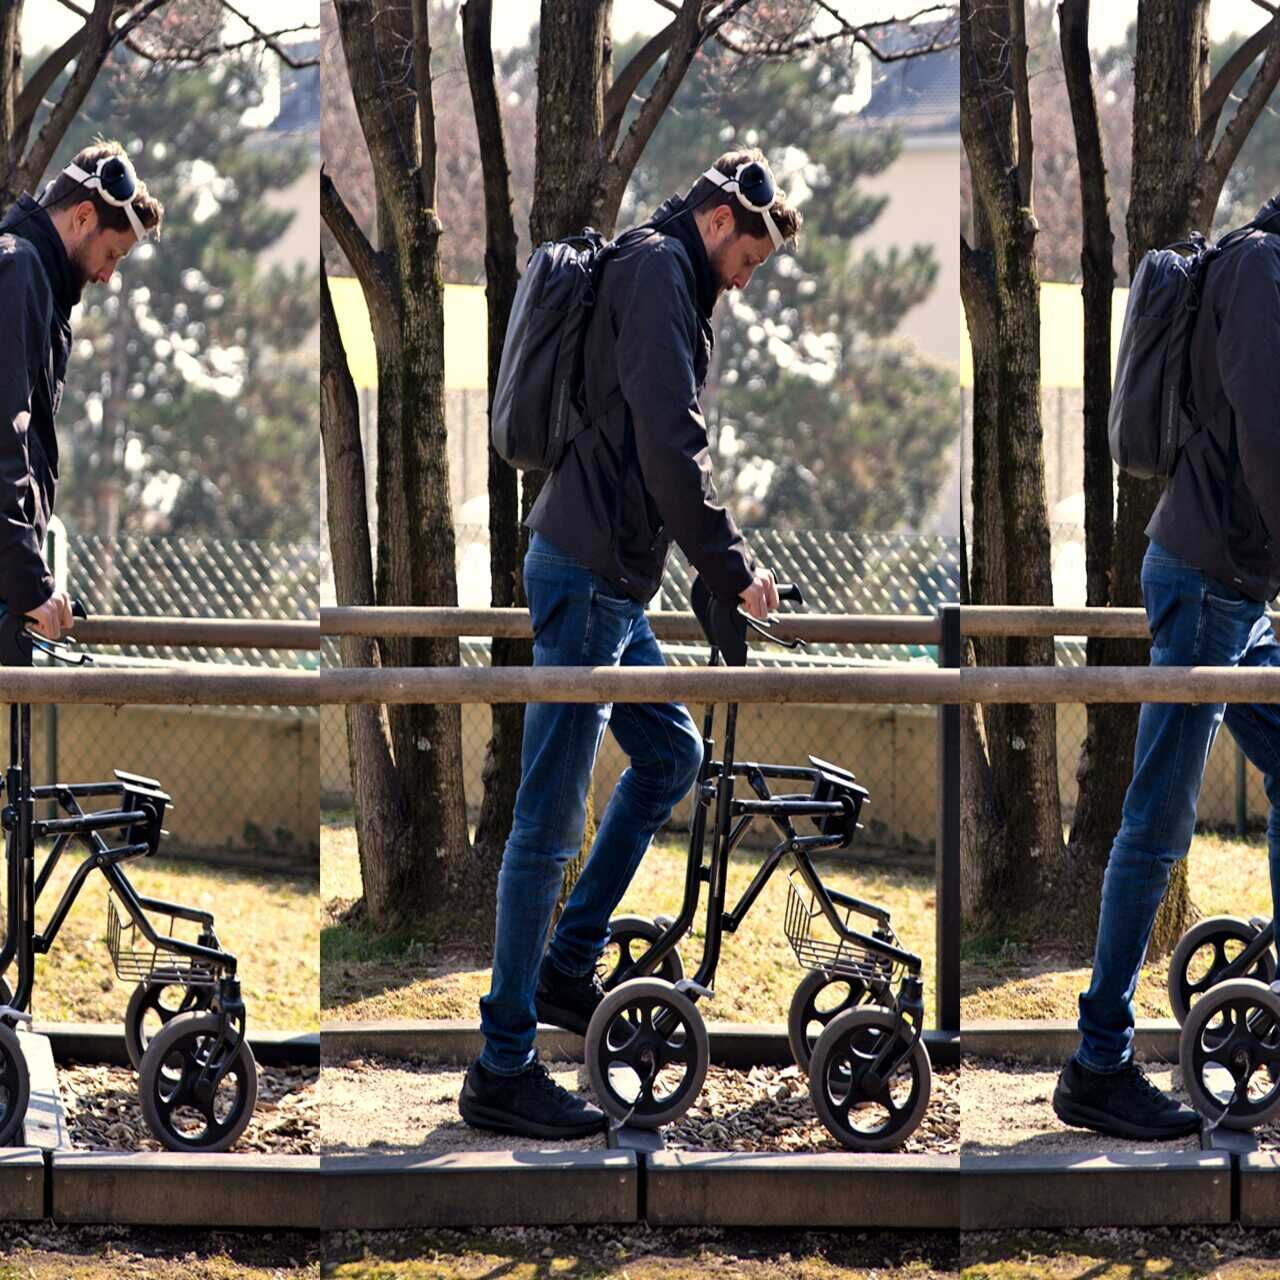 Hodanje zahvaljujući misli: Gert-Jan Oskam, koji je bio paraliziran u donjim udovima nakon nesreće na biciklu i koji je ponovno počeo hodati zahvaljujući digitalnom mostu između mozga i leđne moždine, na Sveučilištu u Lausannei